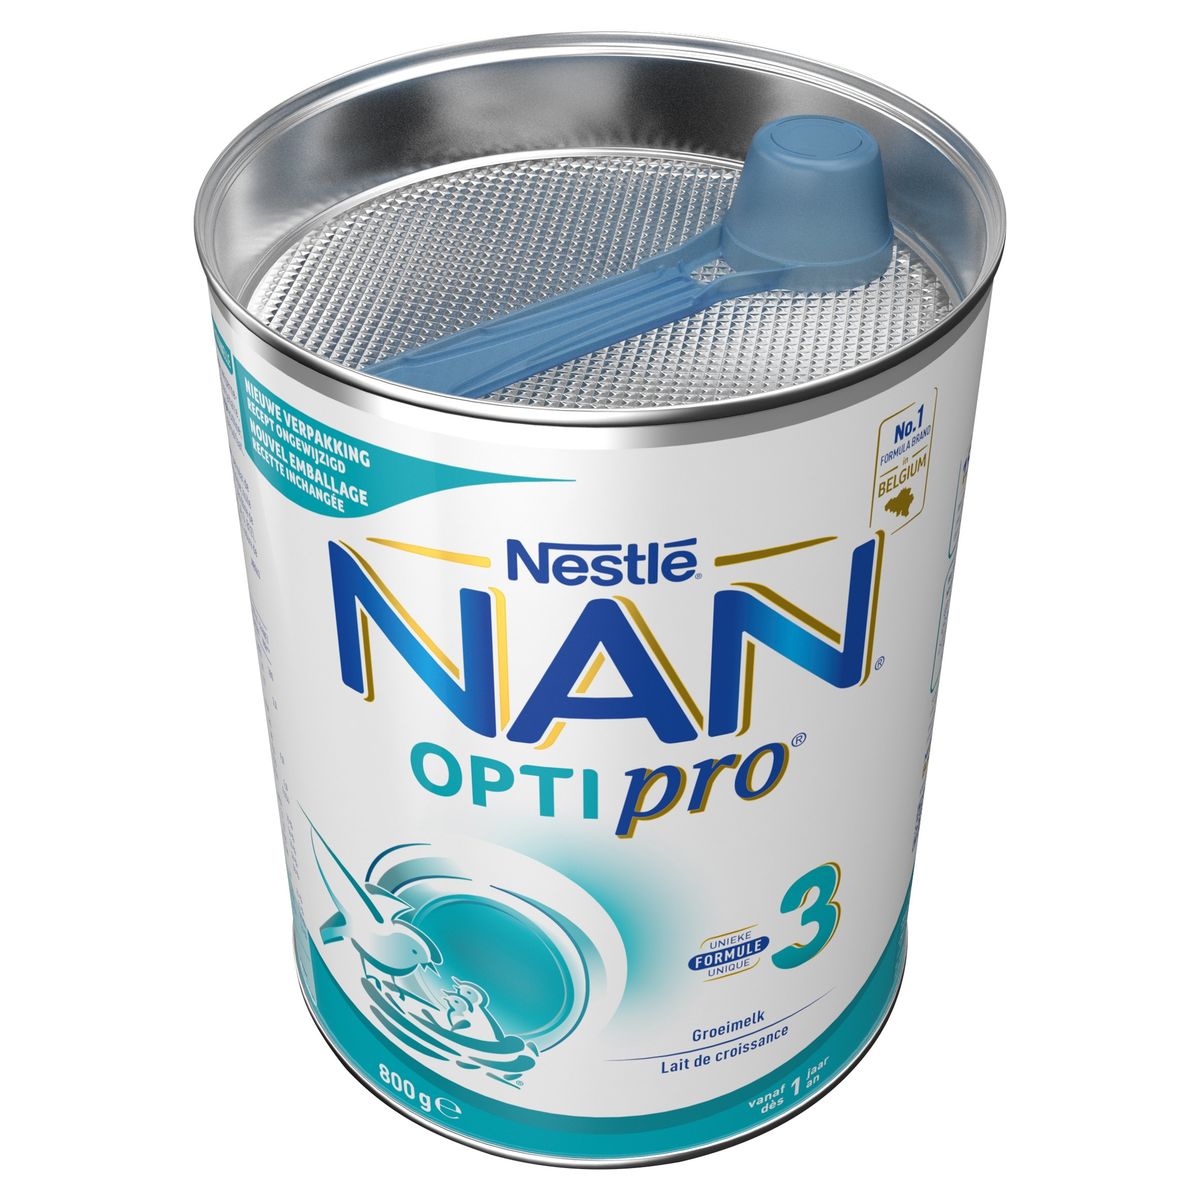 Nan Optipro 3 Groeimelk vanaf 1 Jaar 800 g